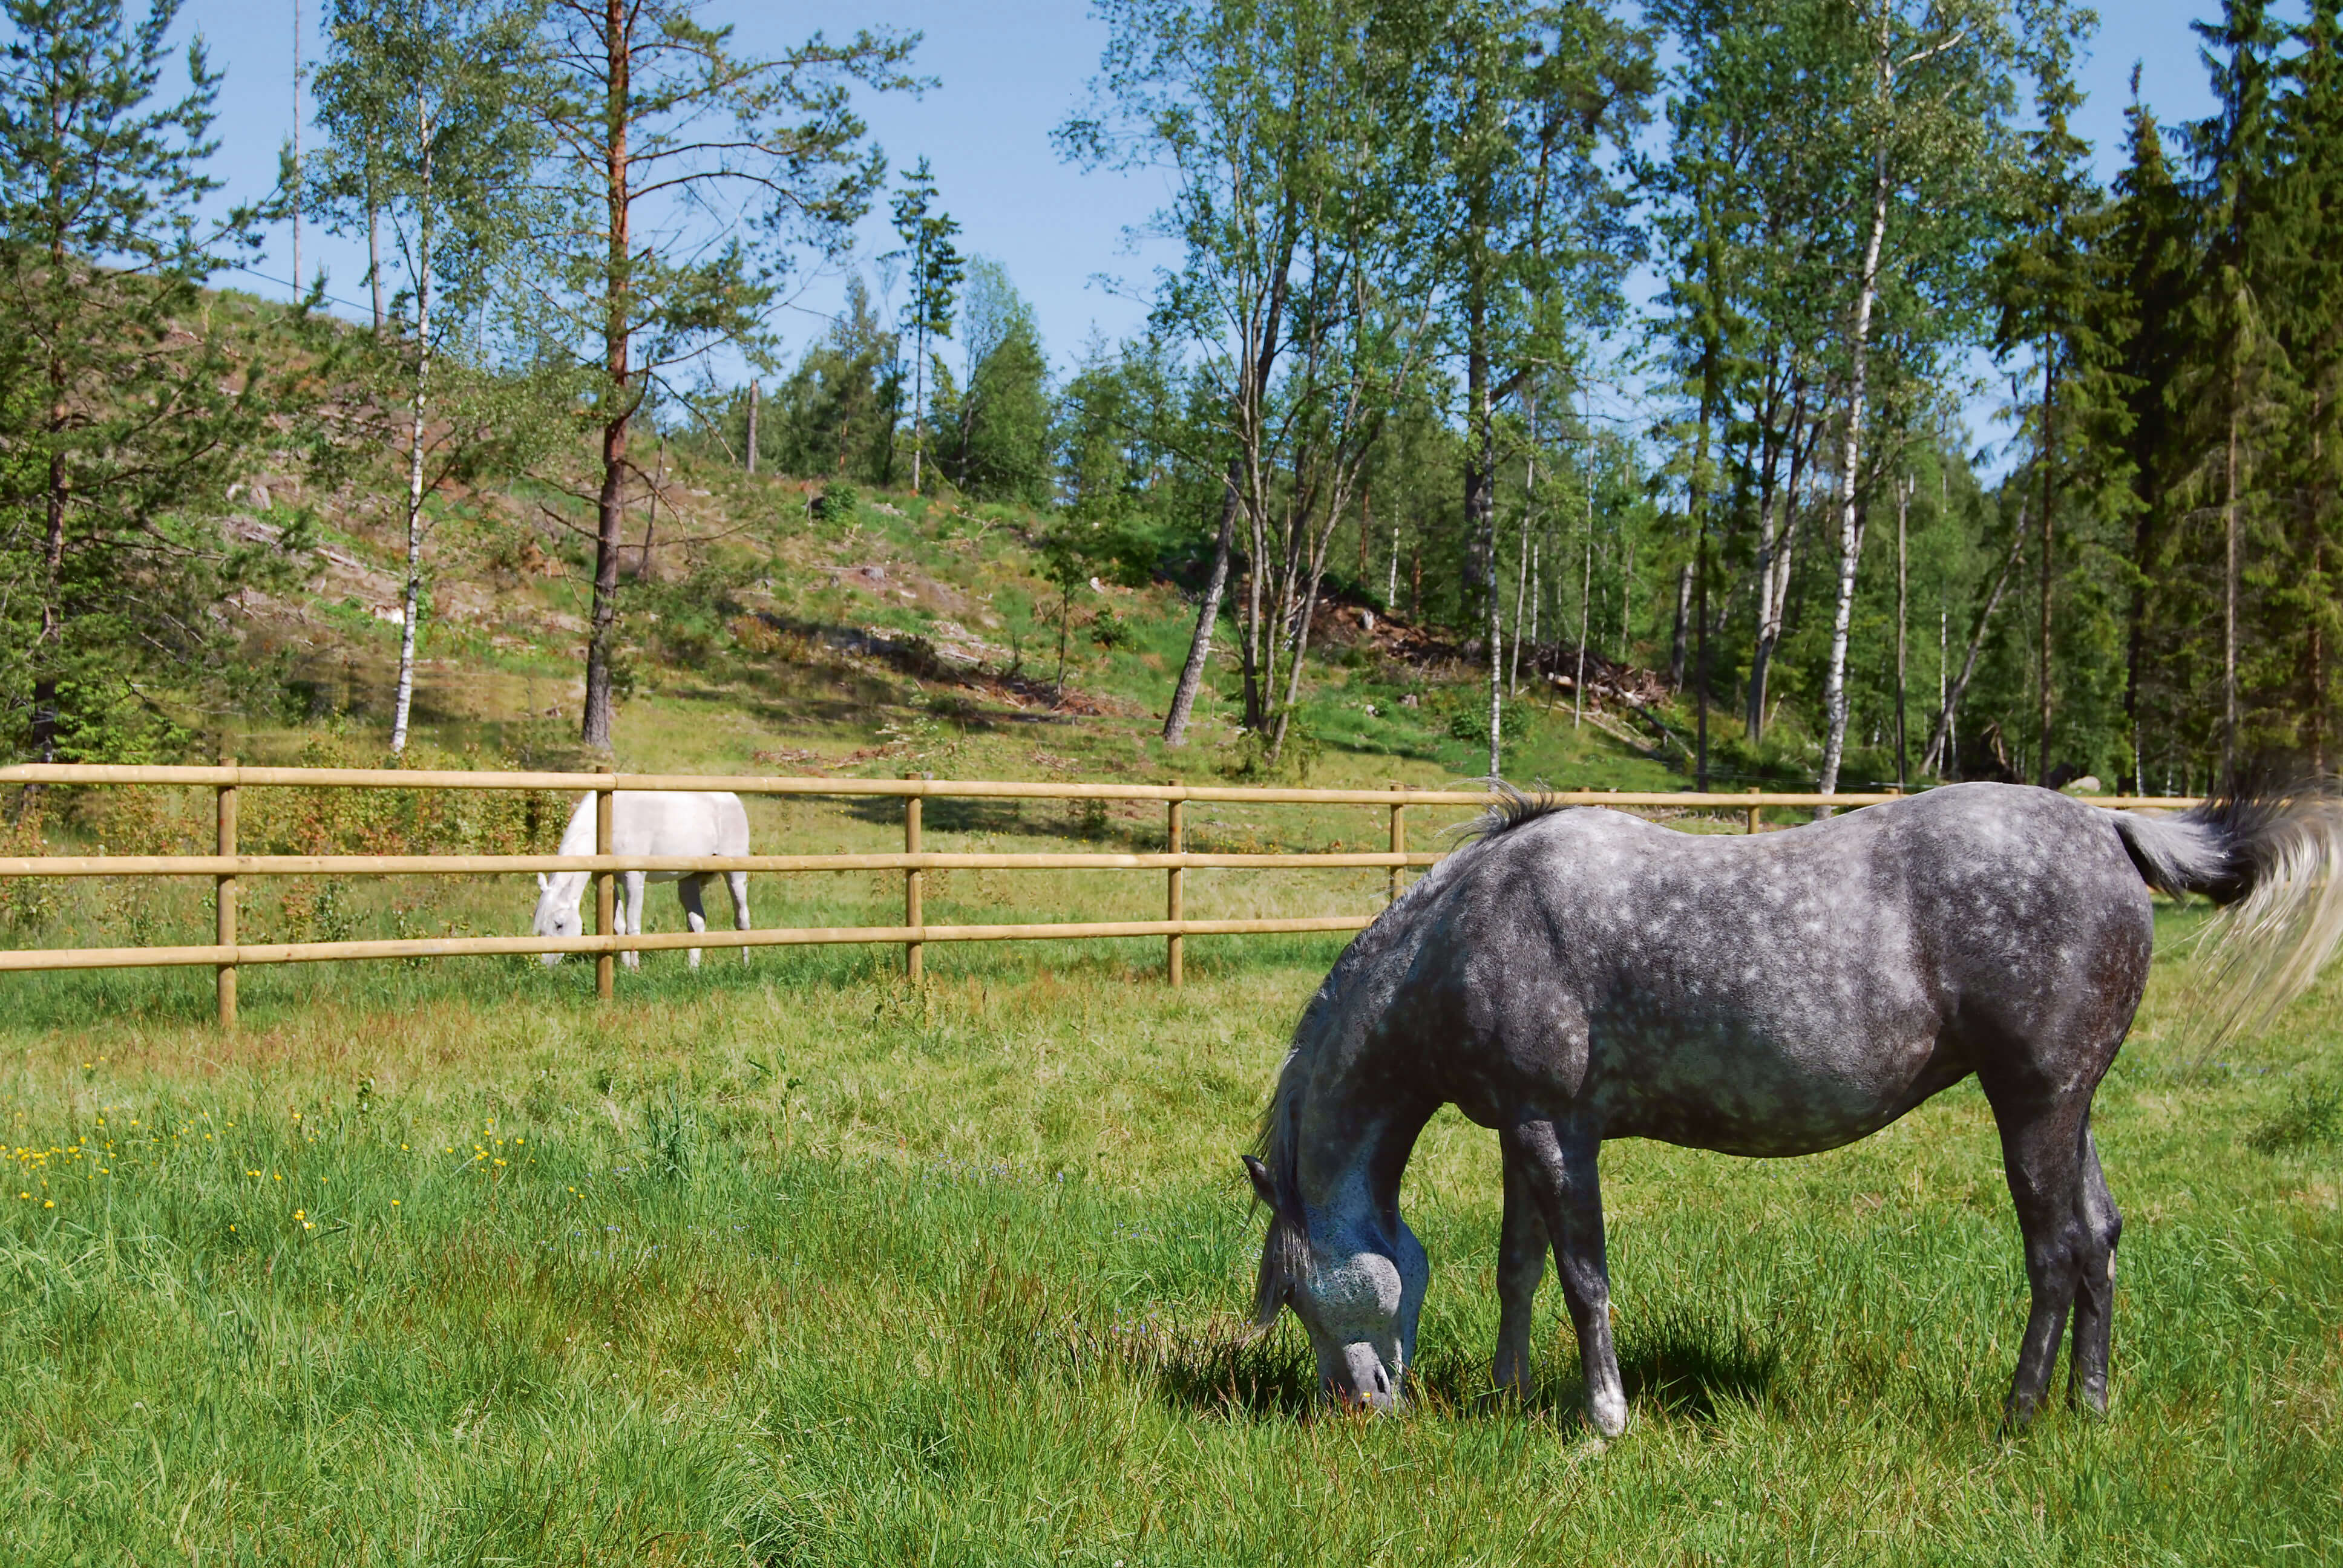 Twee paarden grazen in aparte paddocks. De paardenweiden worden gescheiden door een paardenomheining met half doorgesneden latten.